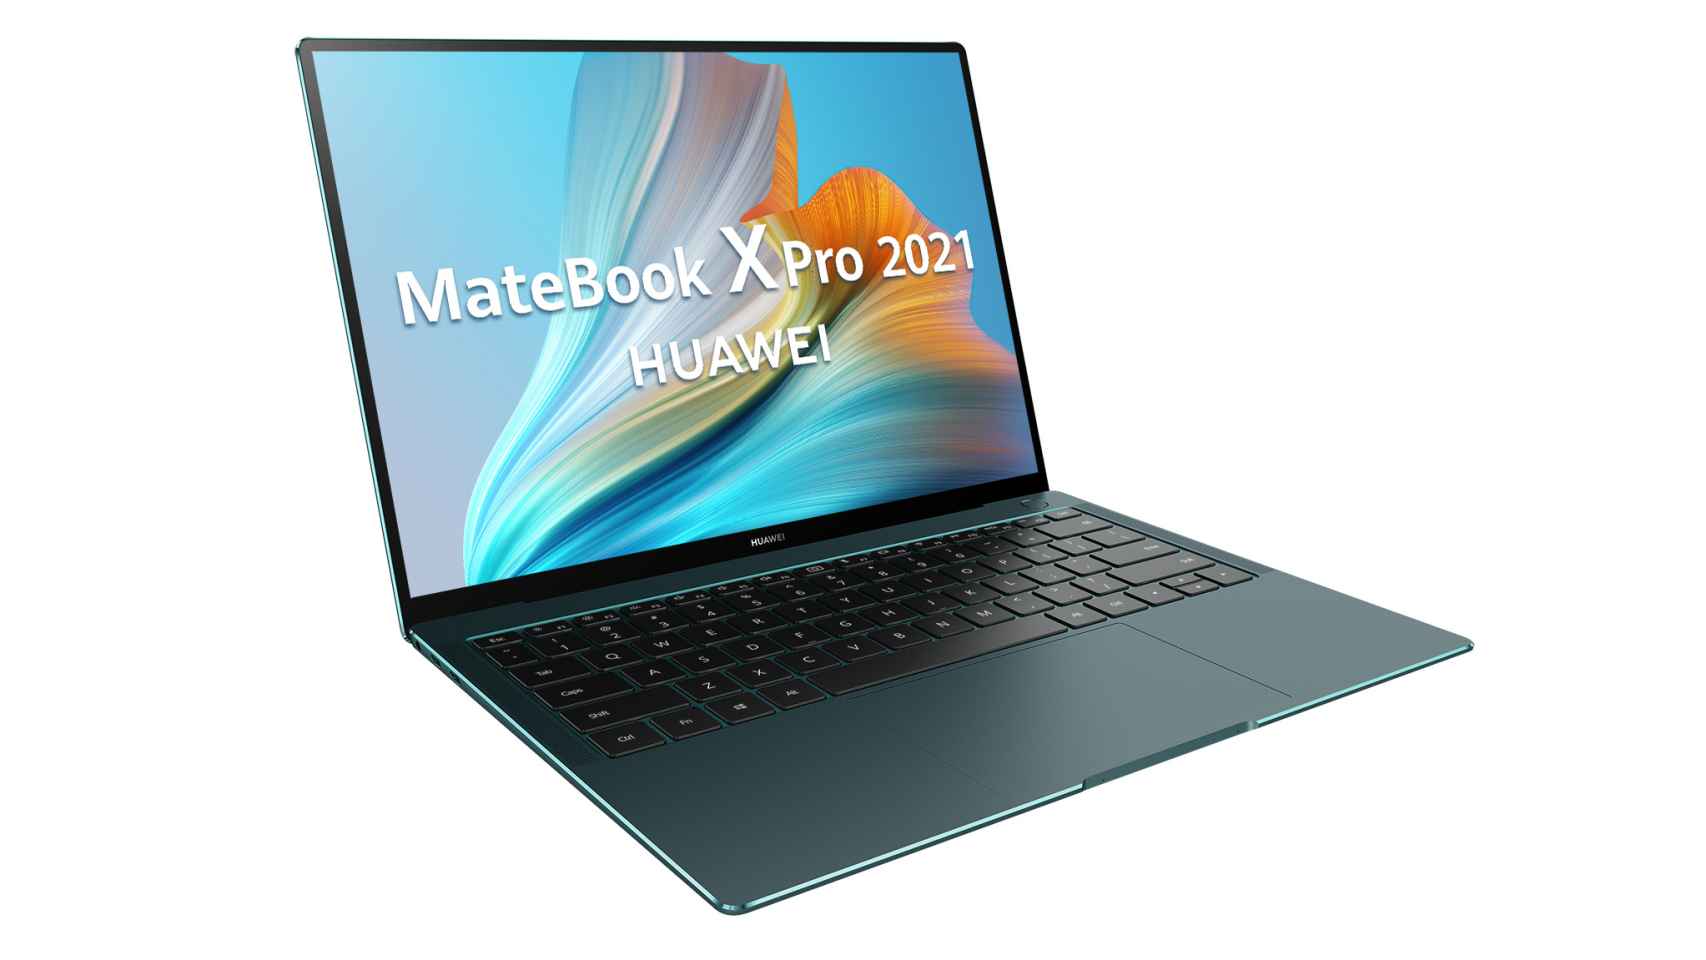 Color verde en el que llegará el Huawei MateBook X Pro 2021.